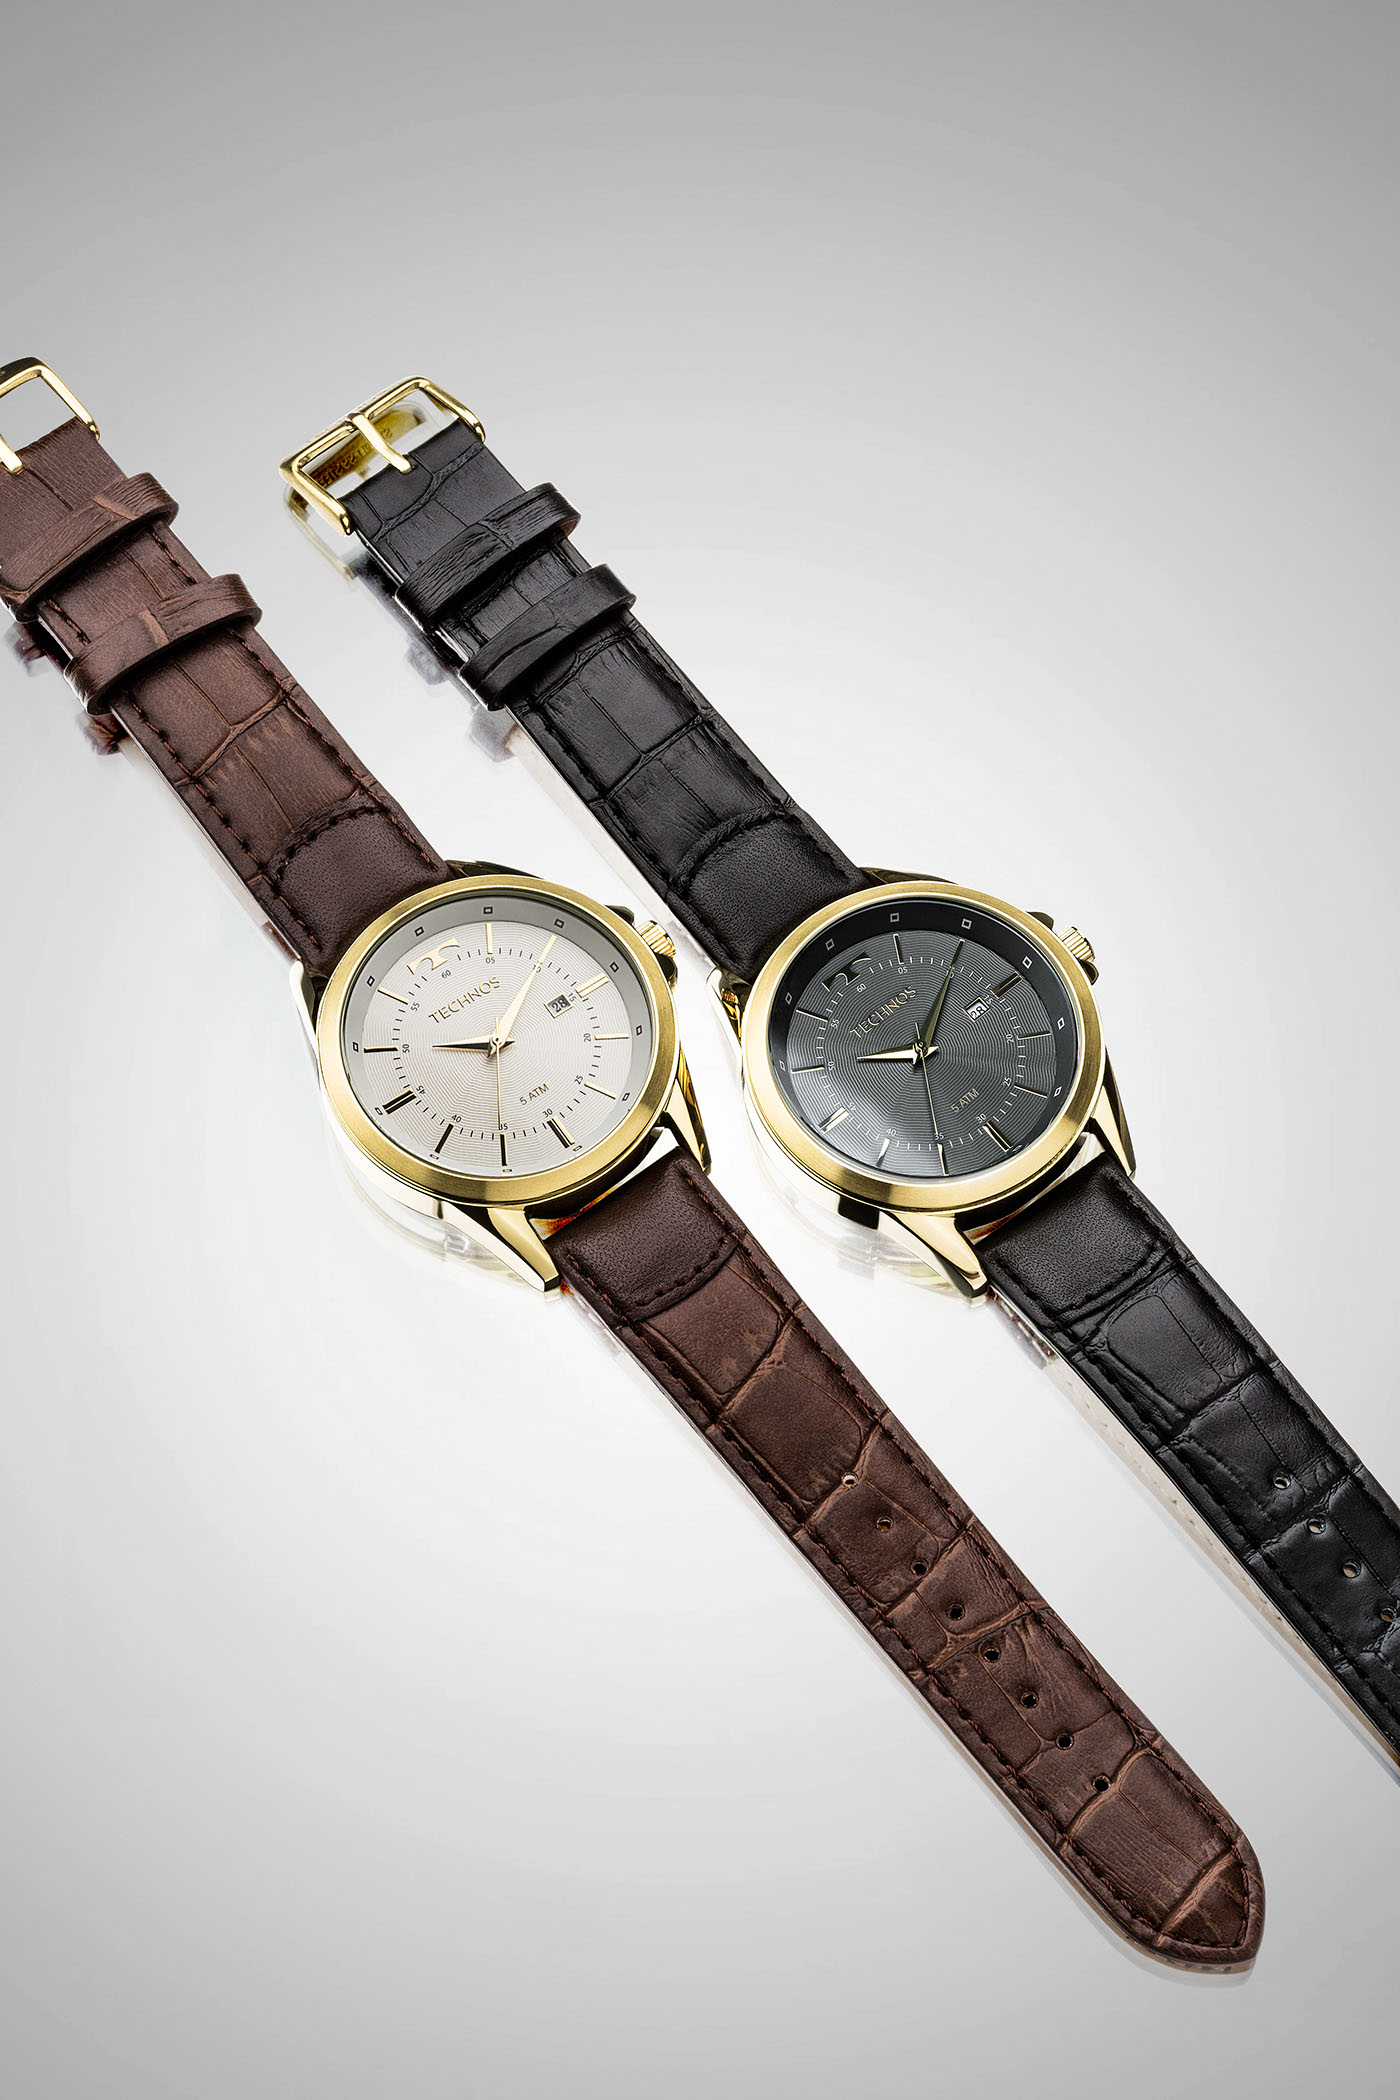 Watches Relógios produto product stillshots publicity publicidade Technos